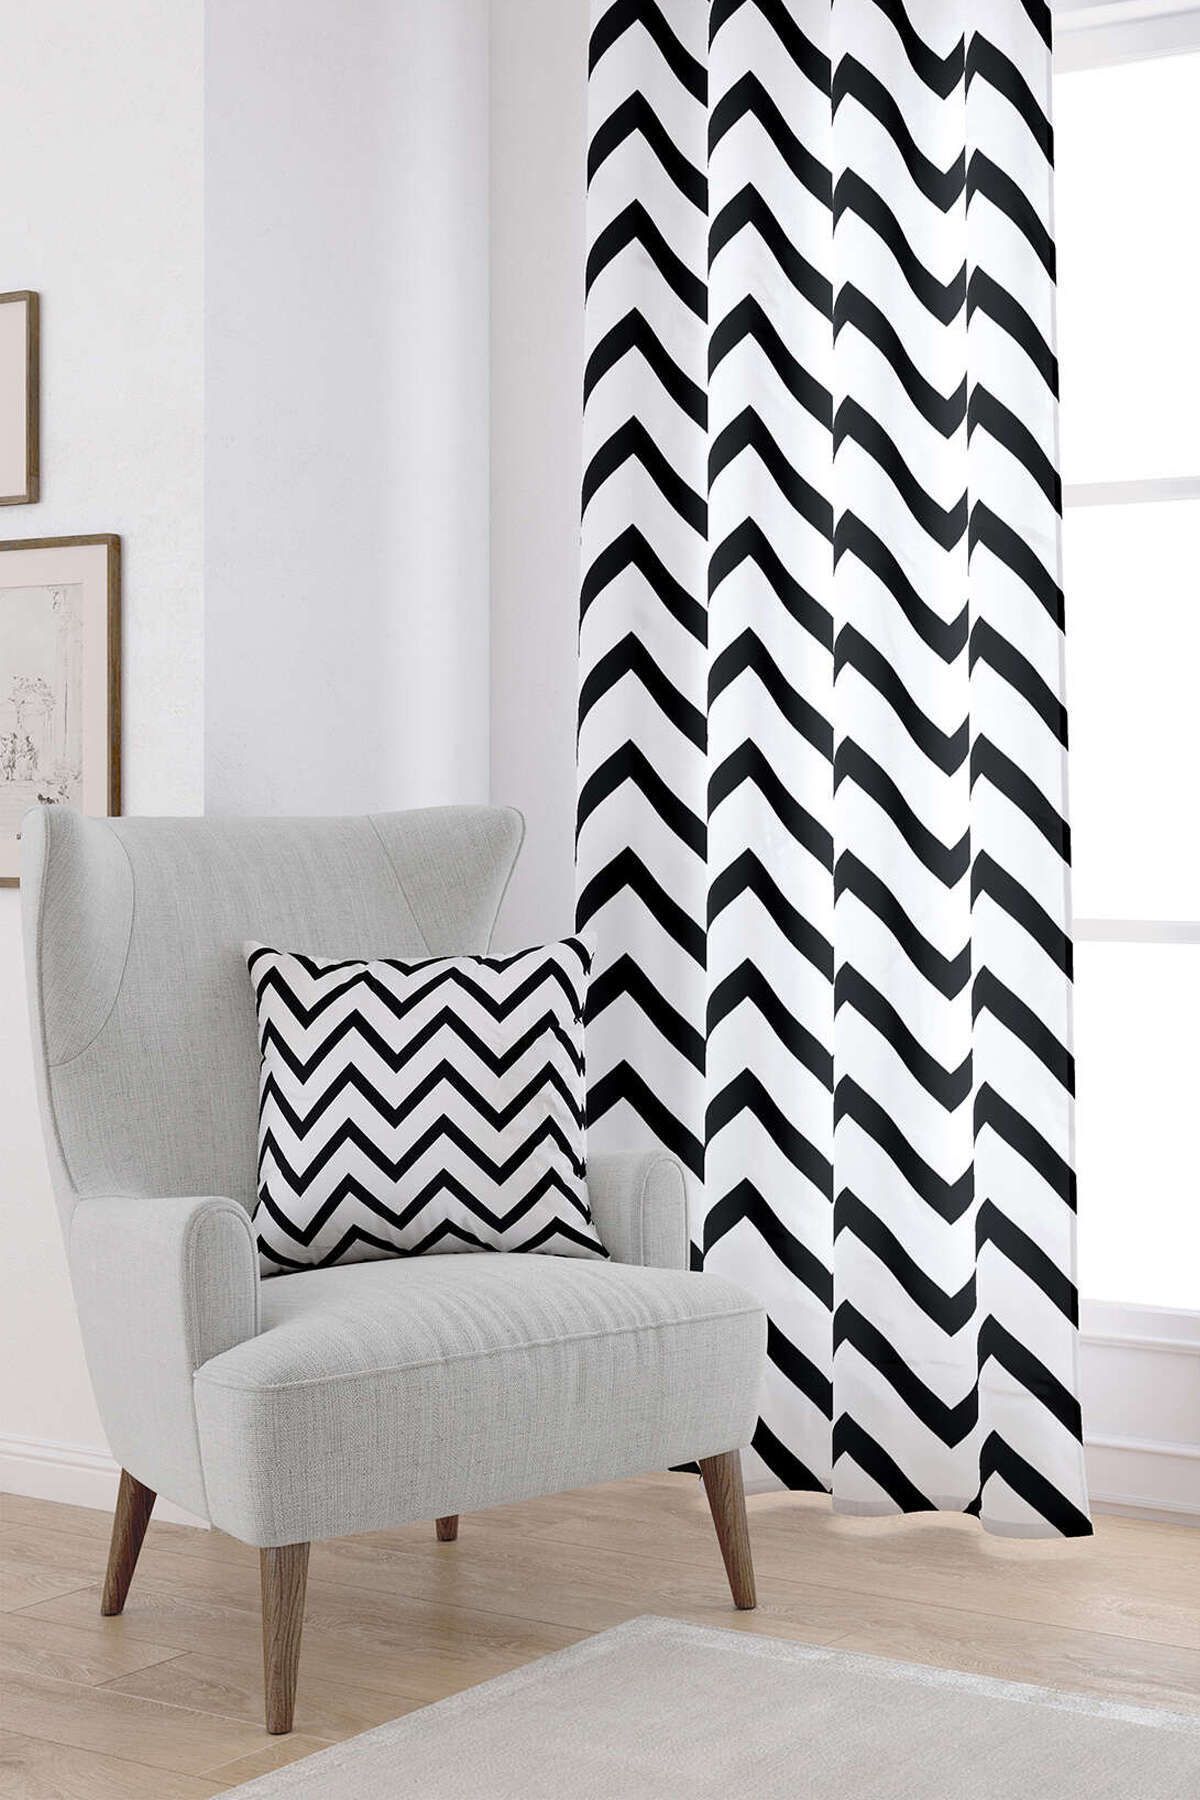 Cango Home Beyaz Siyah Dekoraif Zigzag Desenli Dijital Baskılı Perde Otyk561-pr